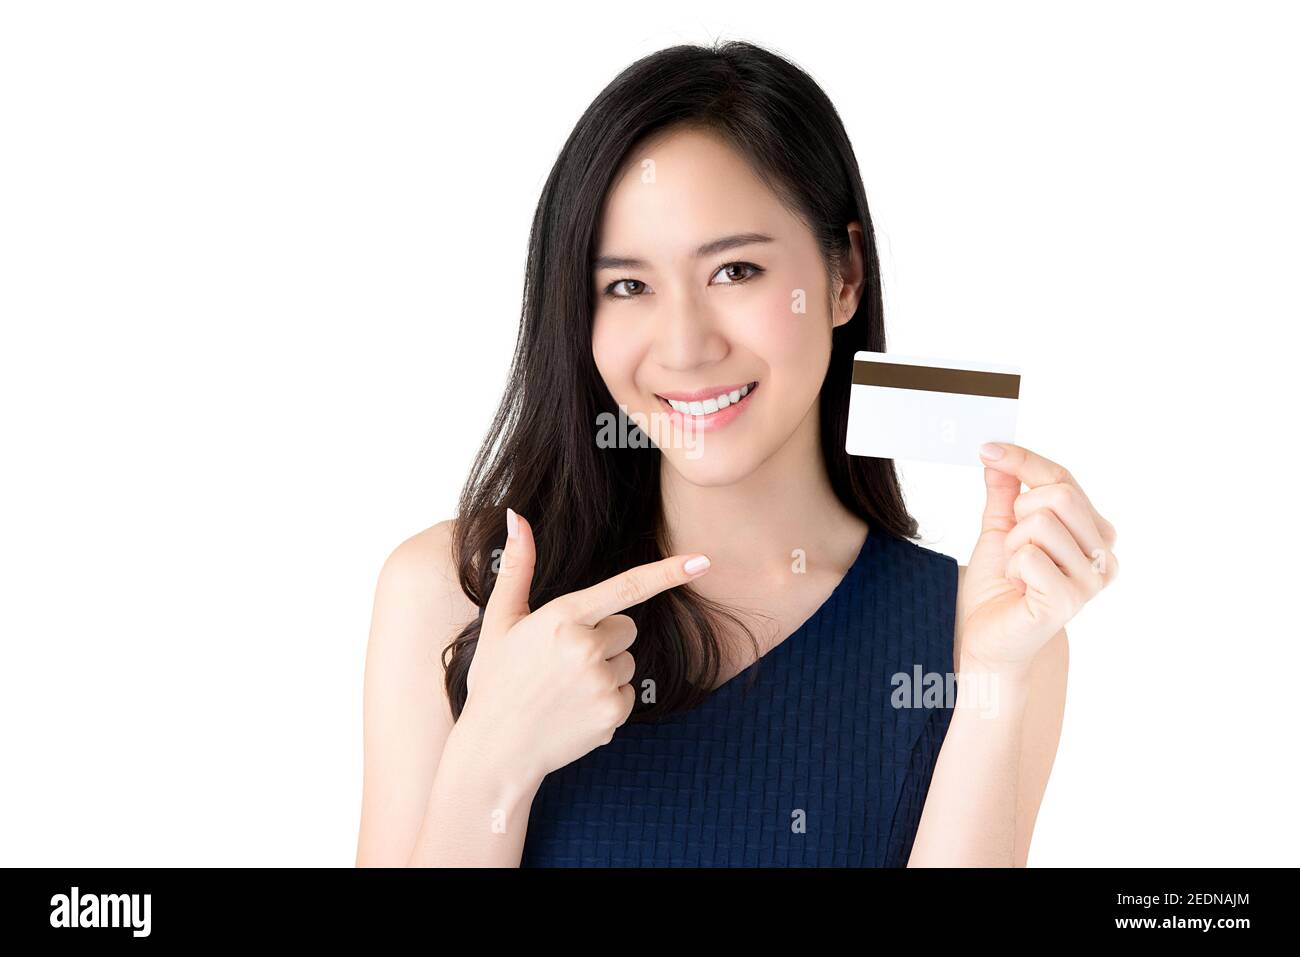 Junge lächelnde schöne asiatische Frau präsentiert Kreditkarte in der Hand zeigt Vertrauen und Vertrauen für die Zahlung, Studio erschossen auf weißem Rücken isoliert Stockfoto